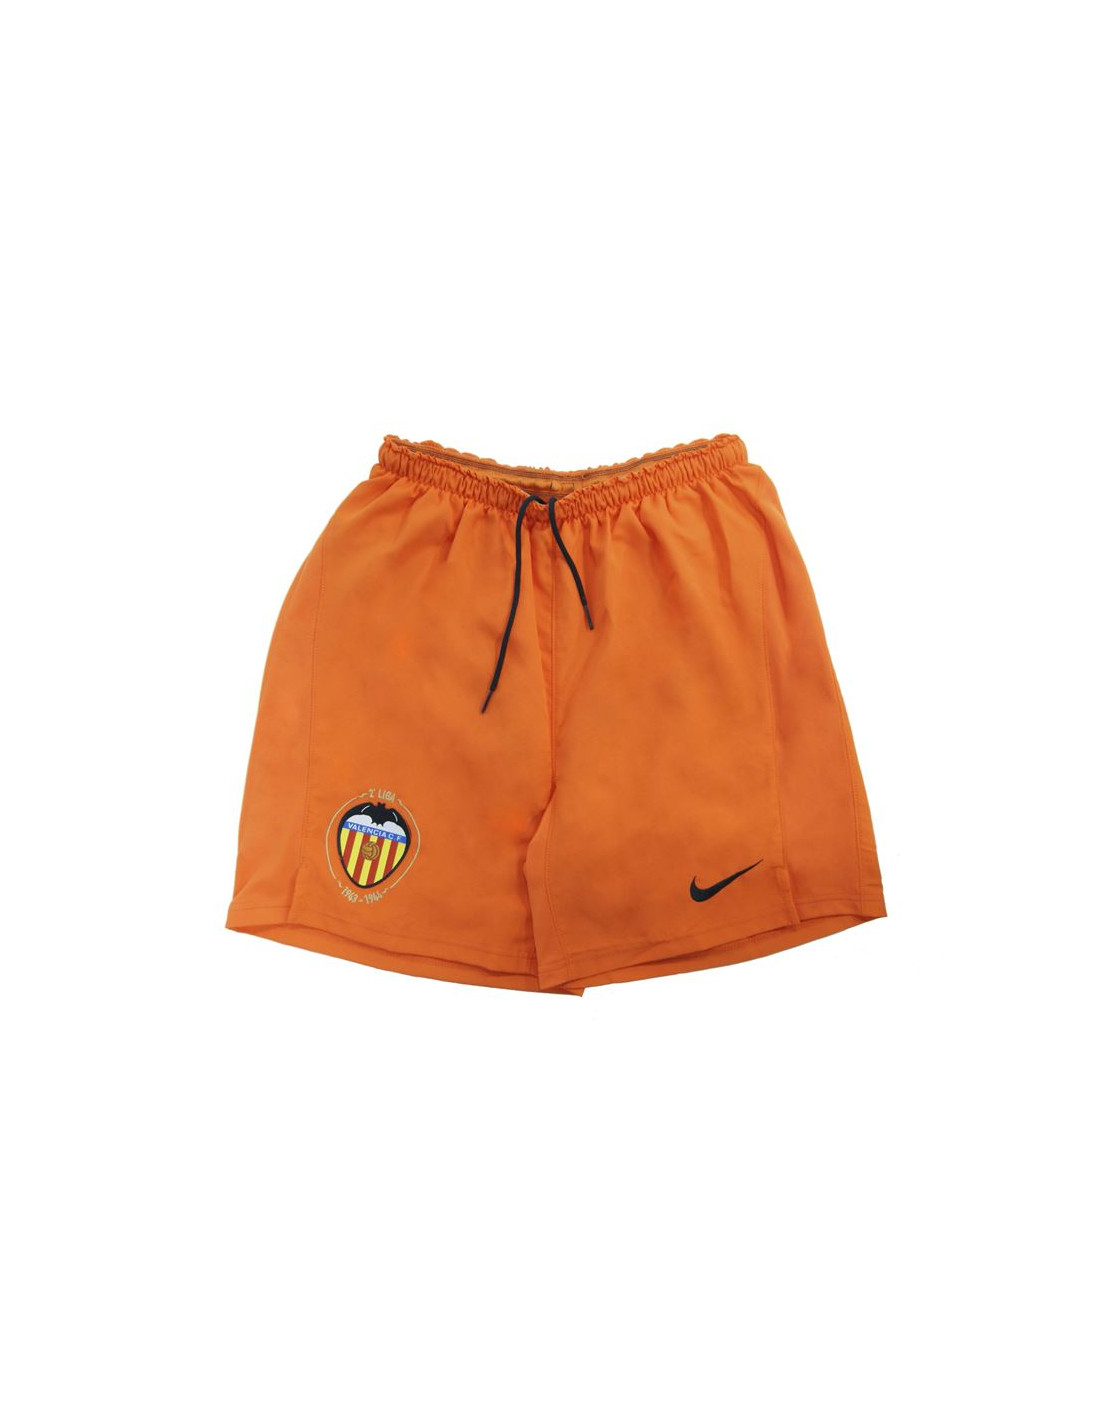 Pantalones de fútbol nike vcf naranja niño